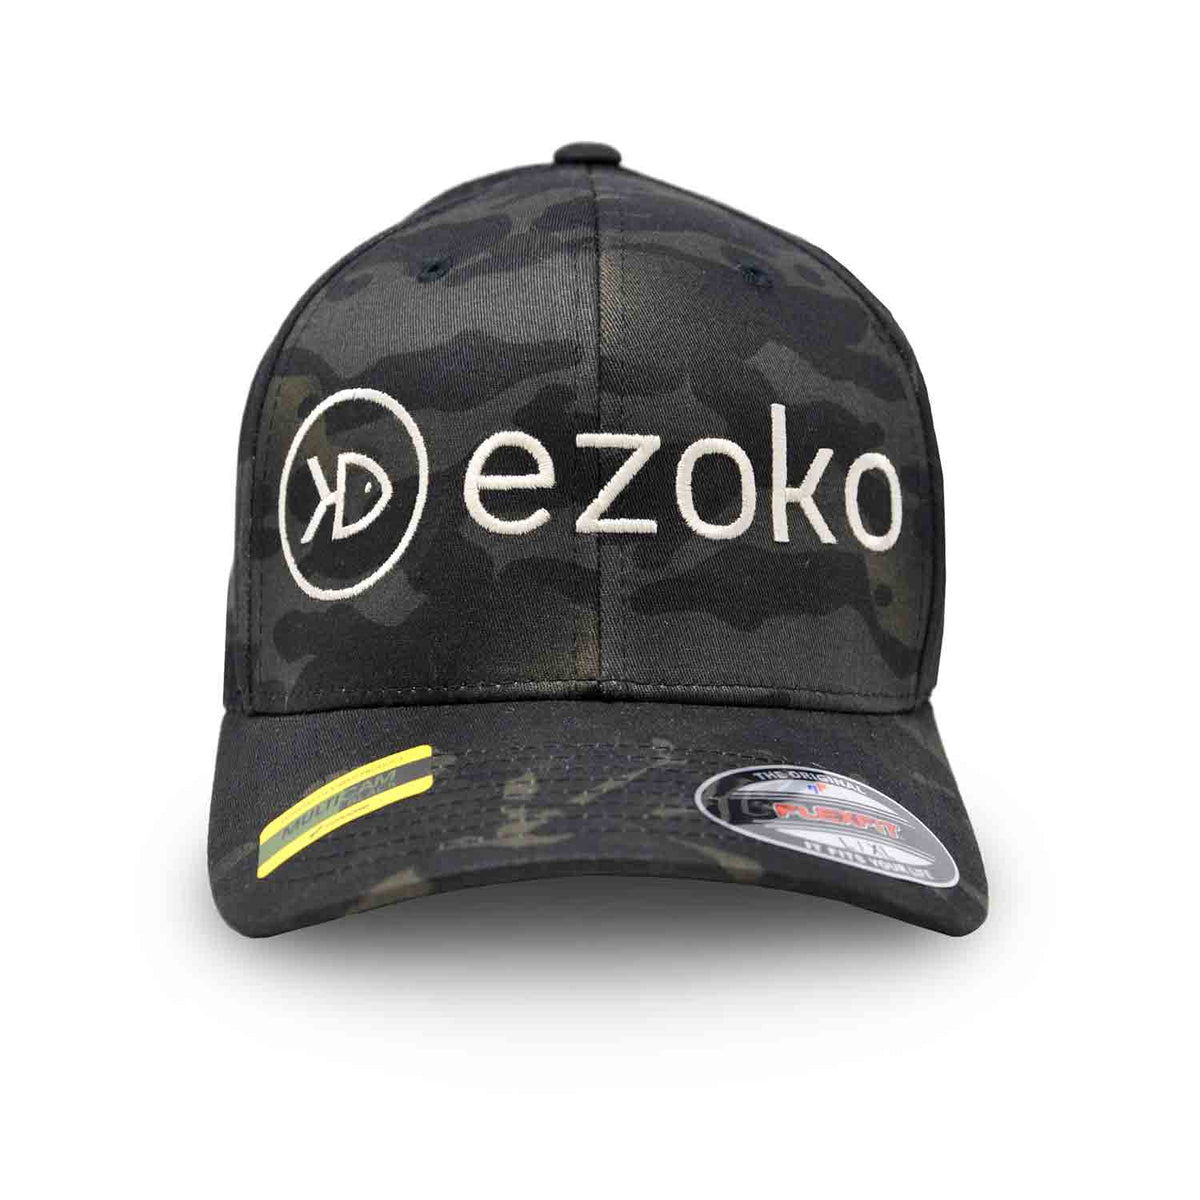 Ezoko FLEXFIT Cap MultiCam Black Hats